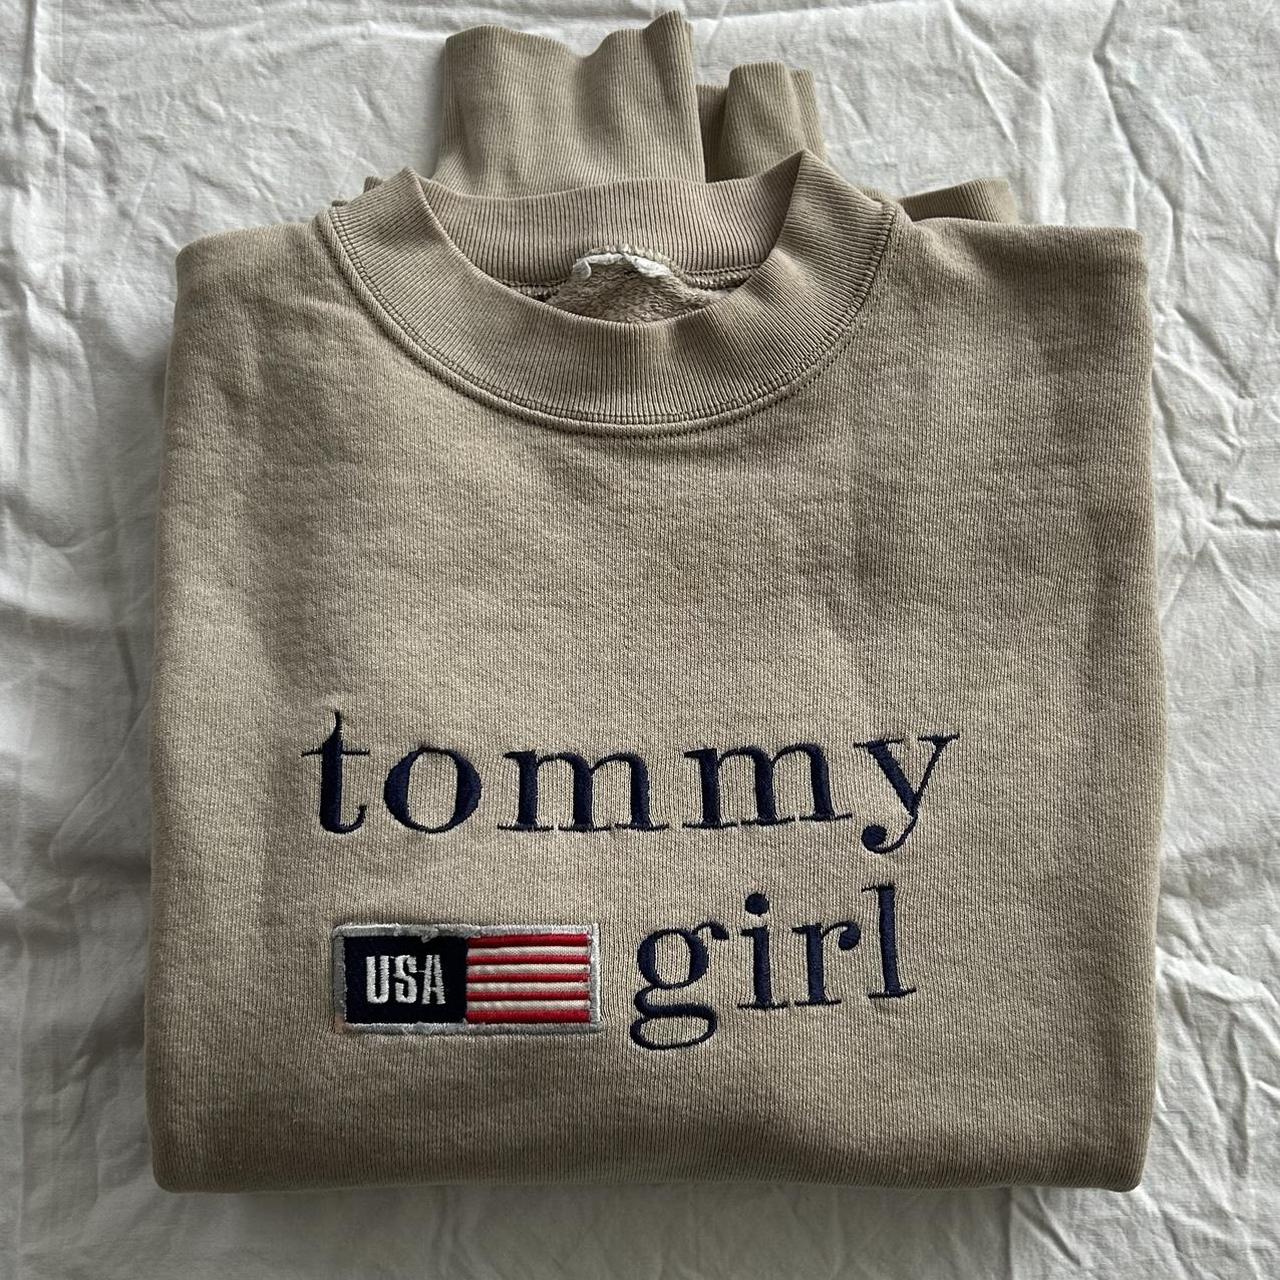 Large Tommy Hilfiger Cropped T-Shirt. Olive green, - Depop